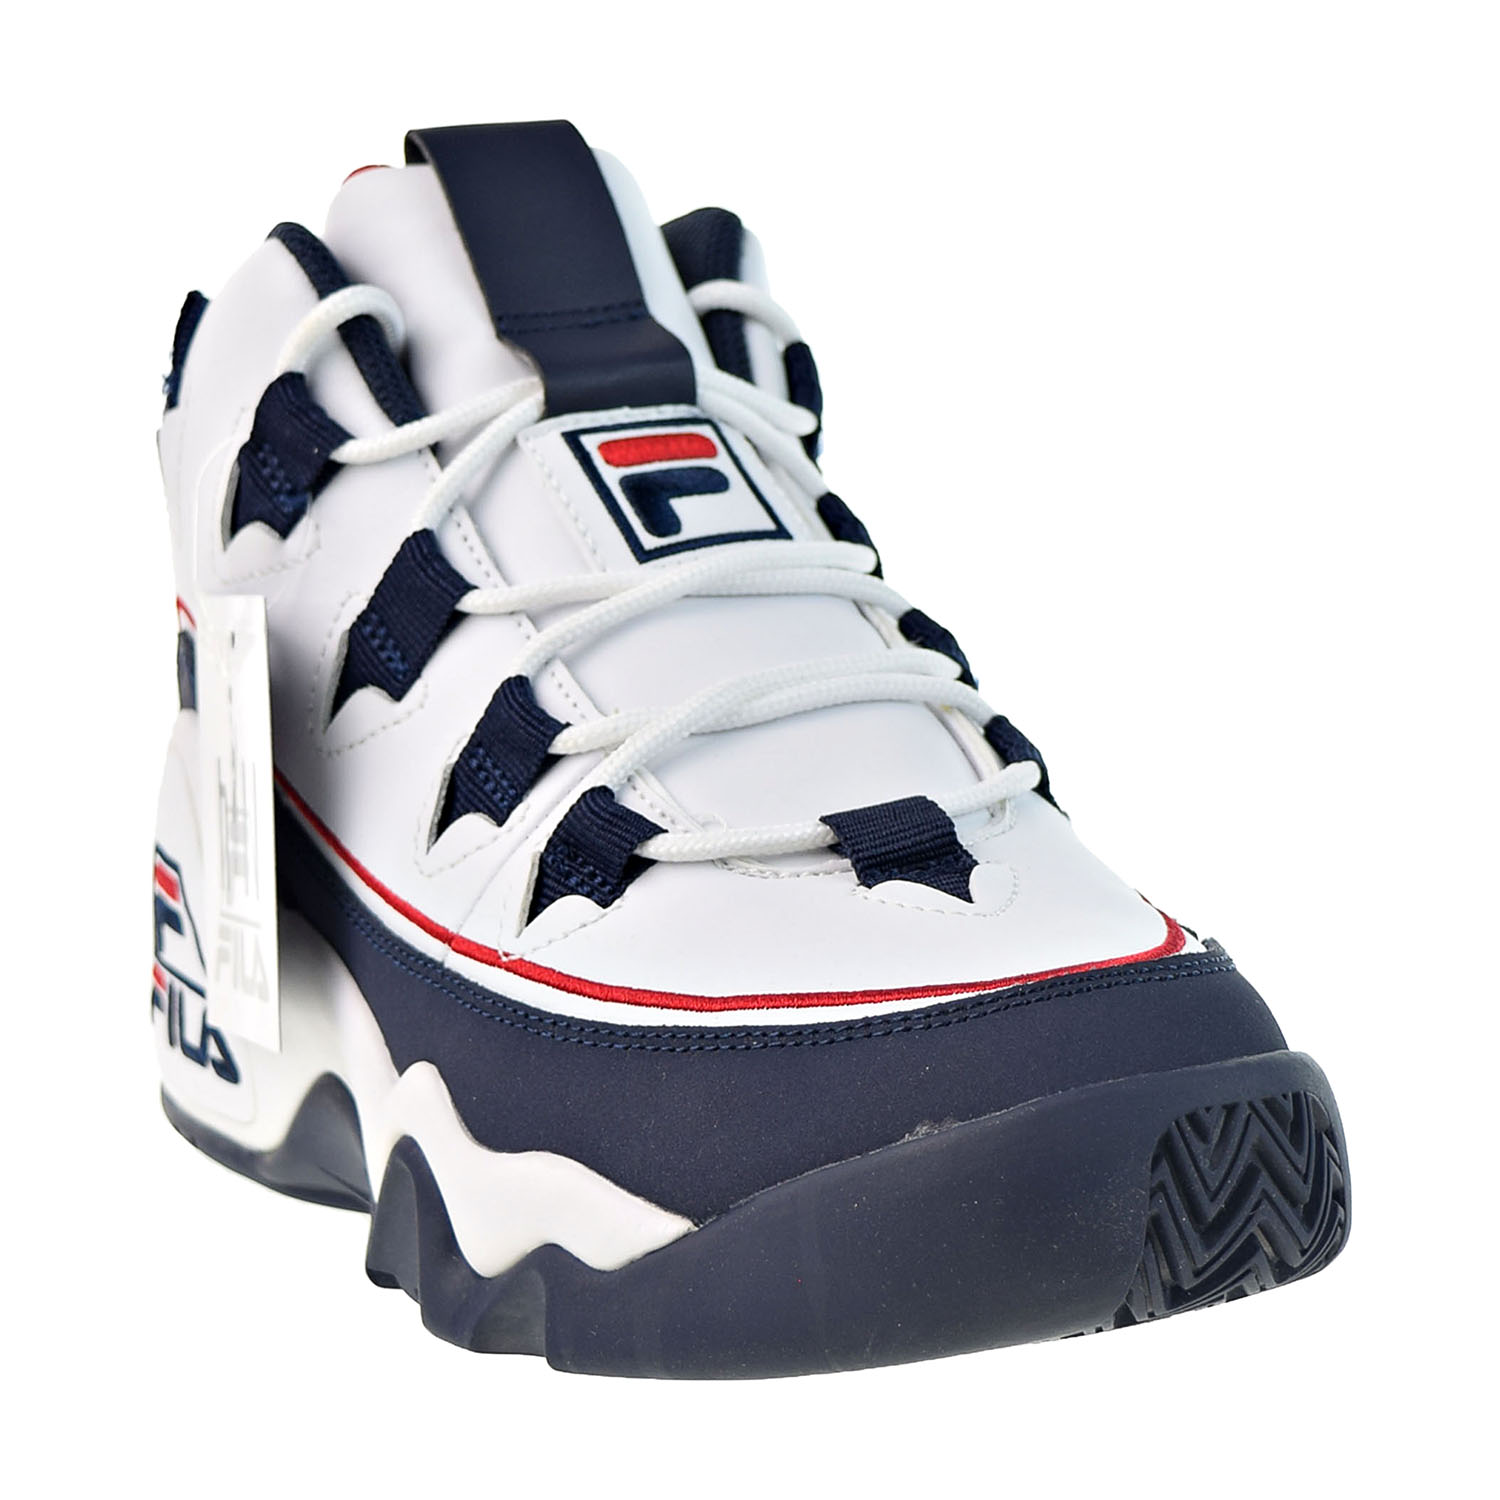 Fila Grant Hill 1 Offset Men's Shoes White-Navy-Red 1BM00860-125 | eBay